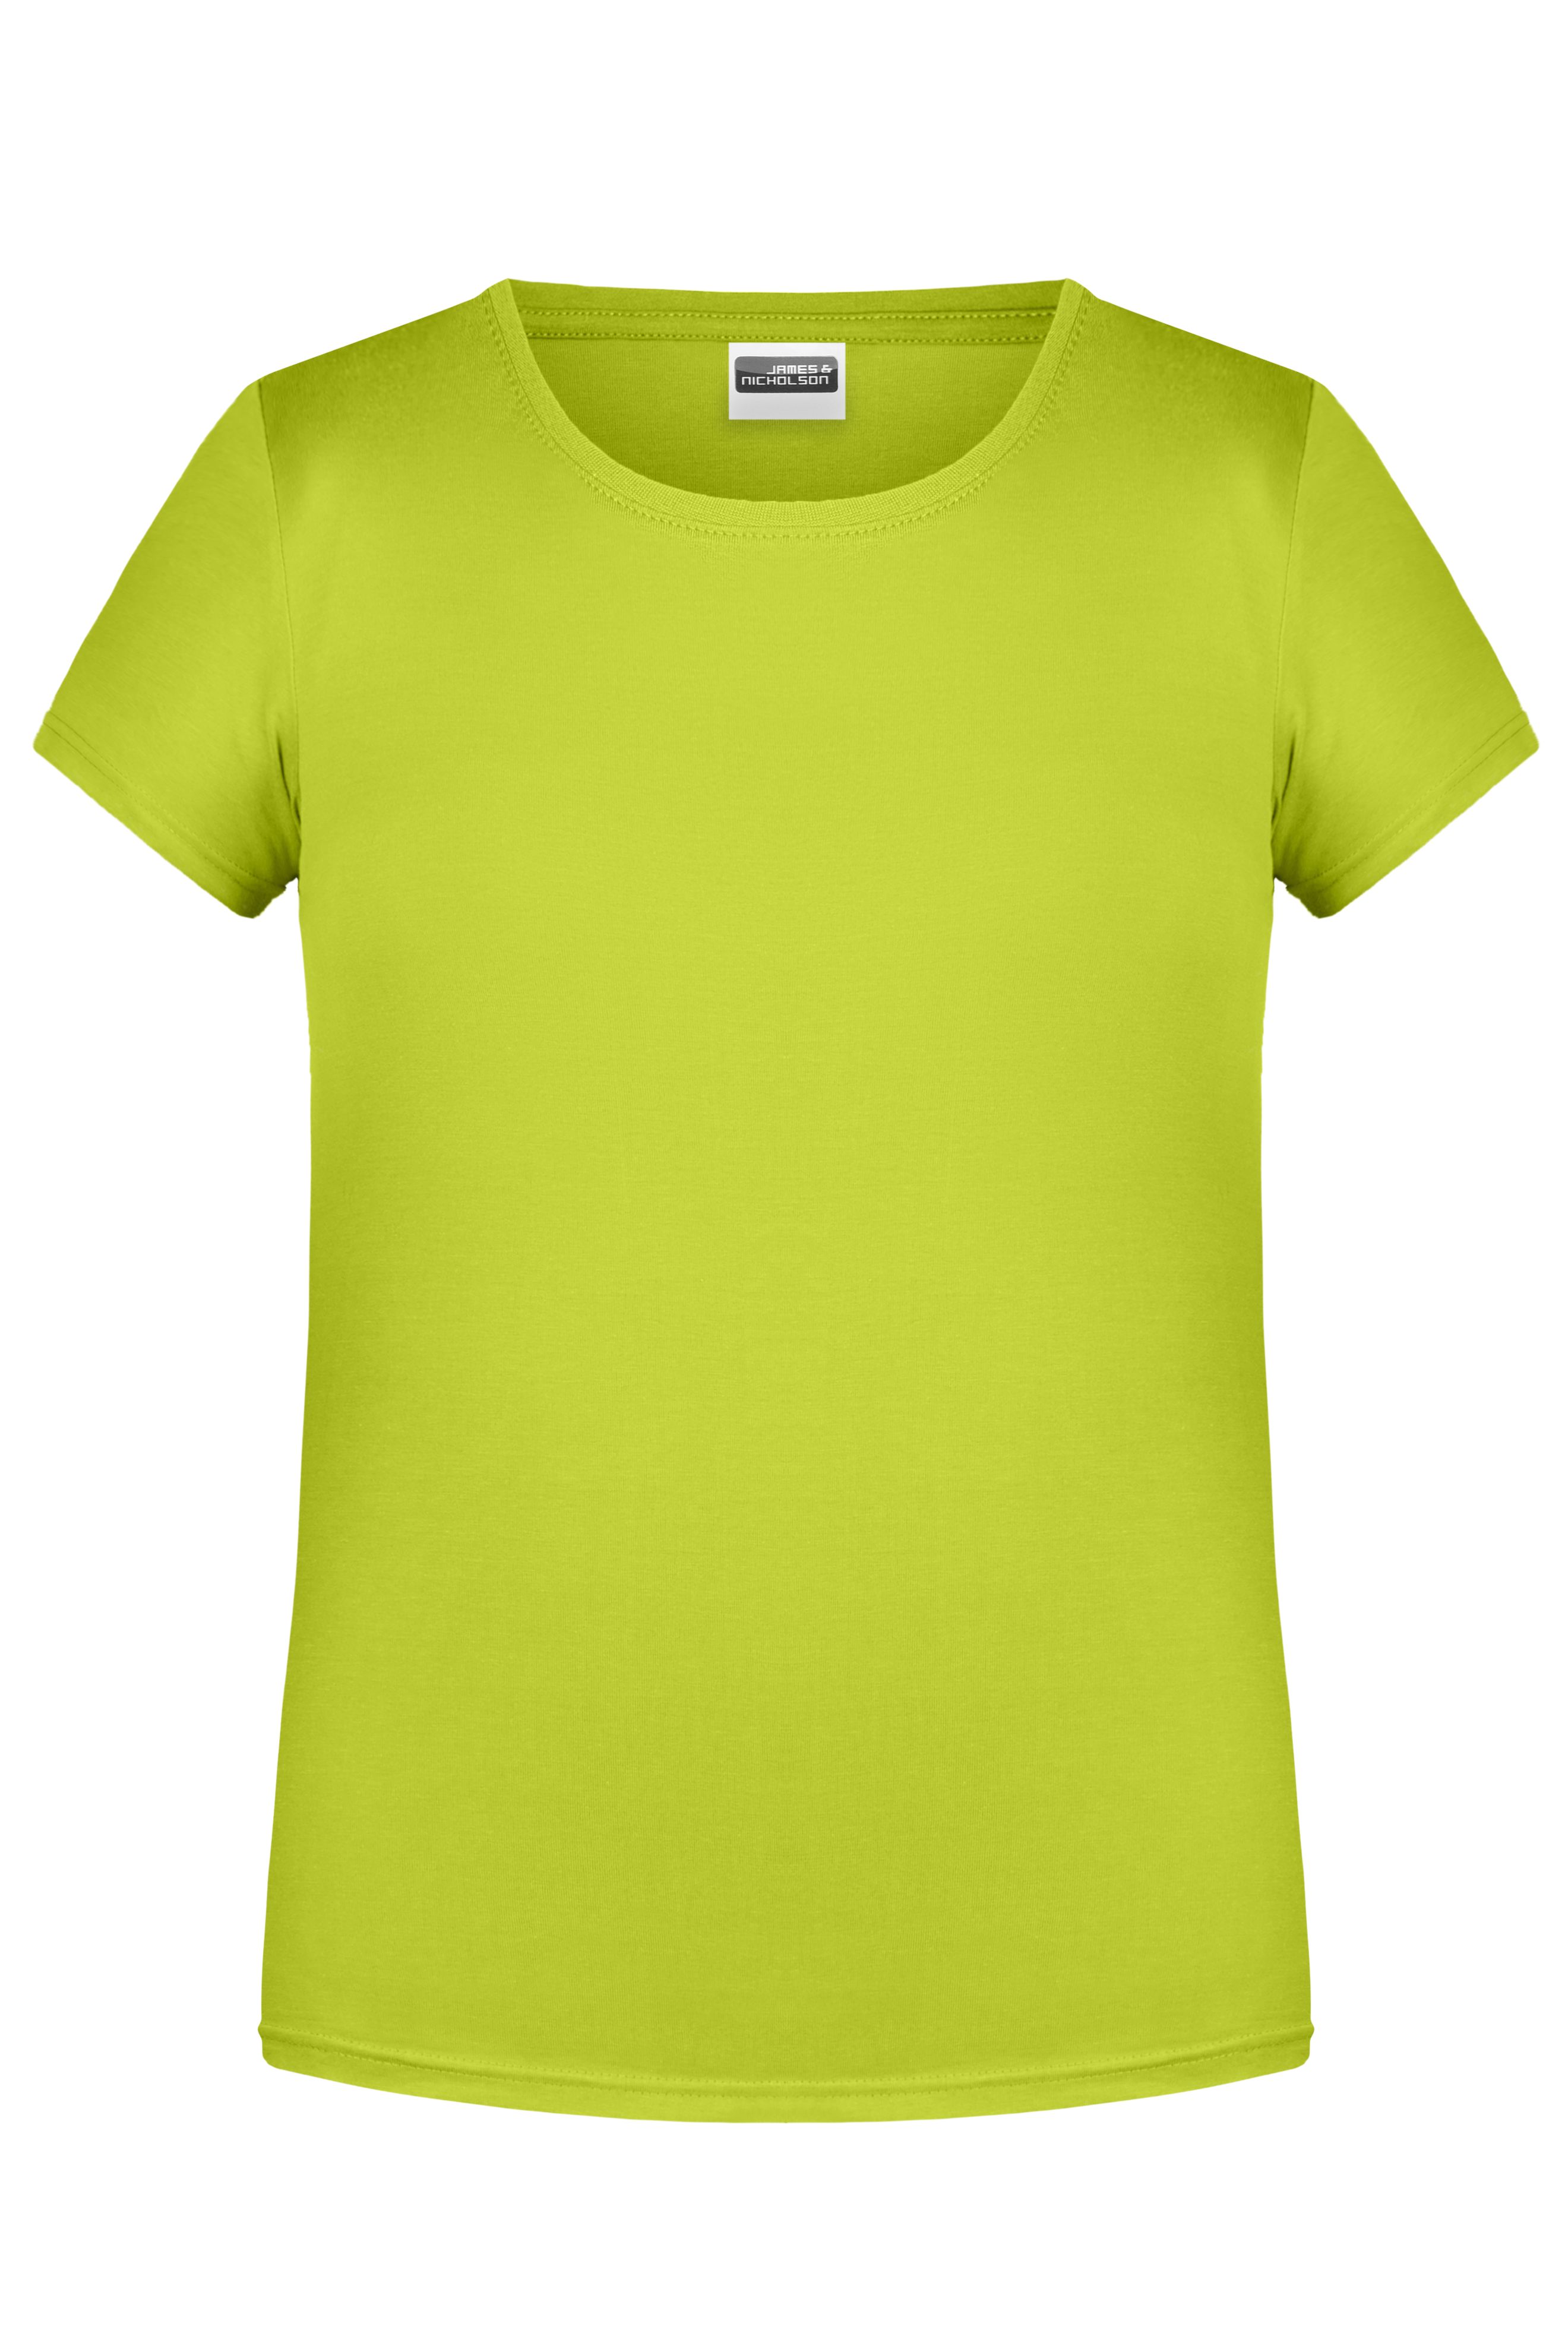 Girls' Basic-T 8007G T-Shirt für Kinder in klassischer Form